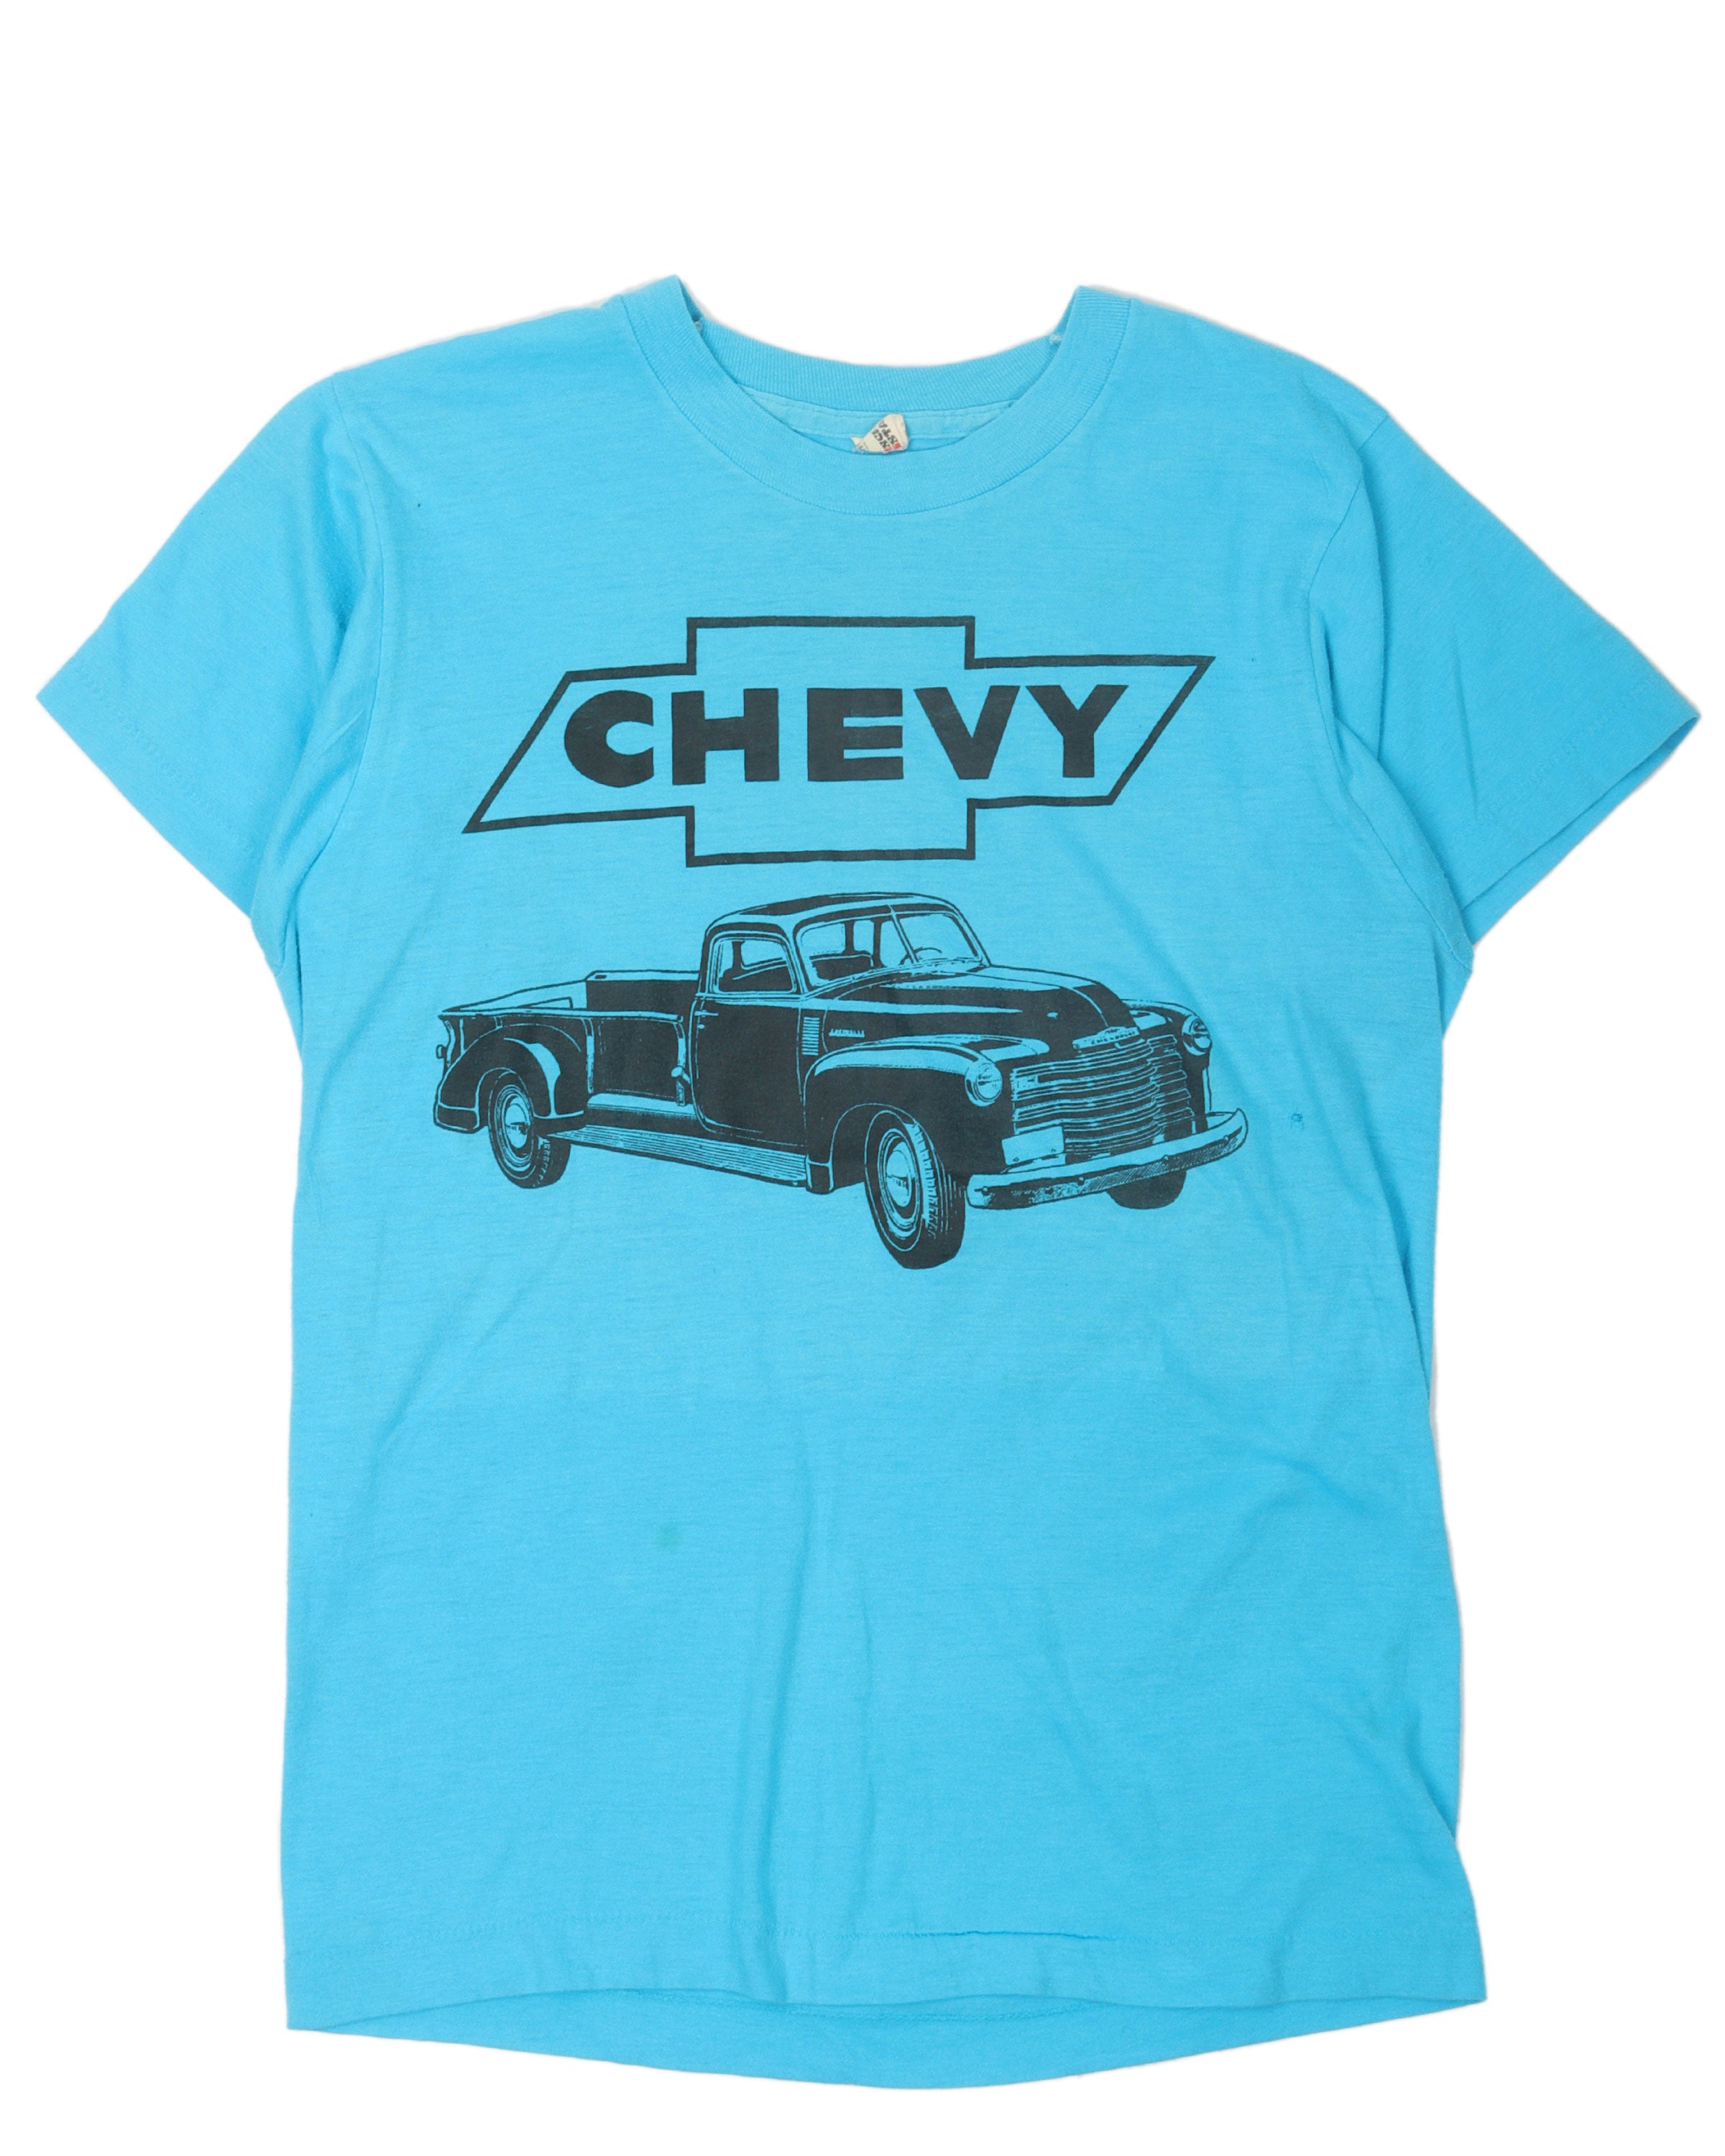 Chevy T-shirt